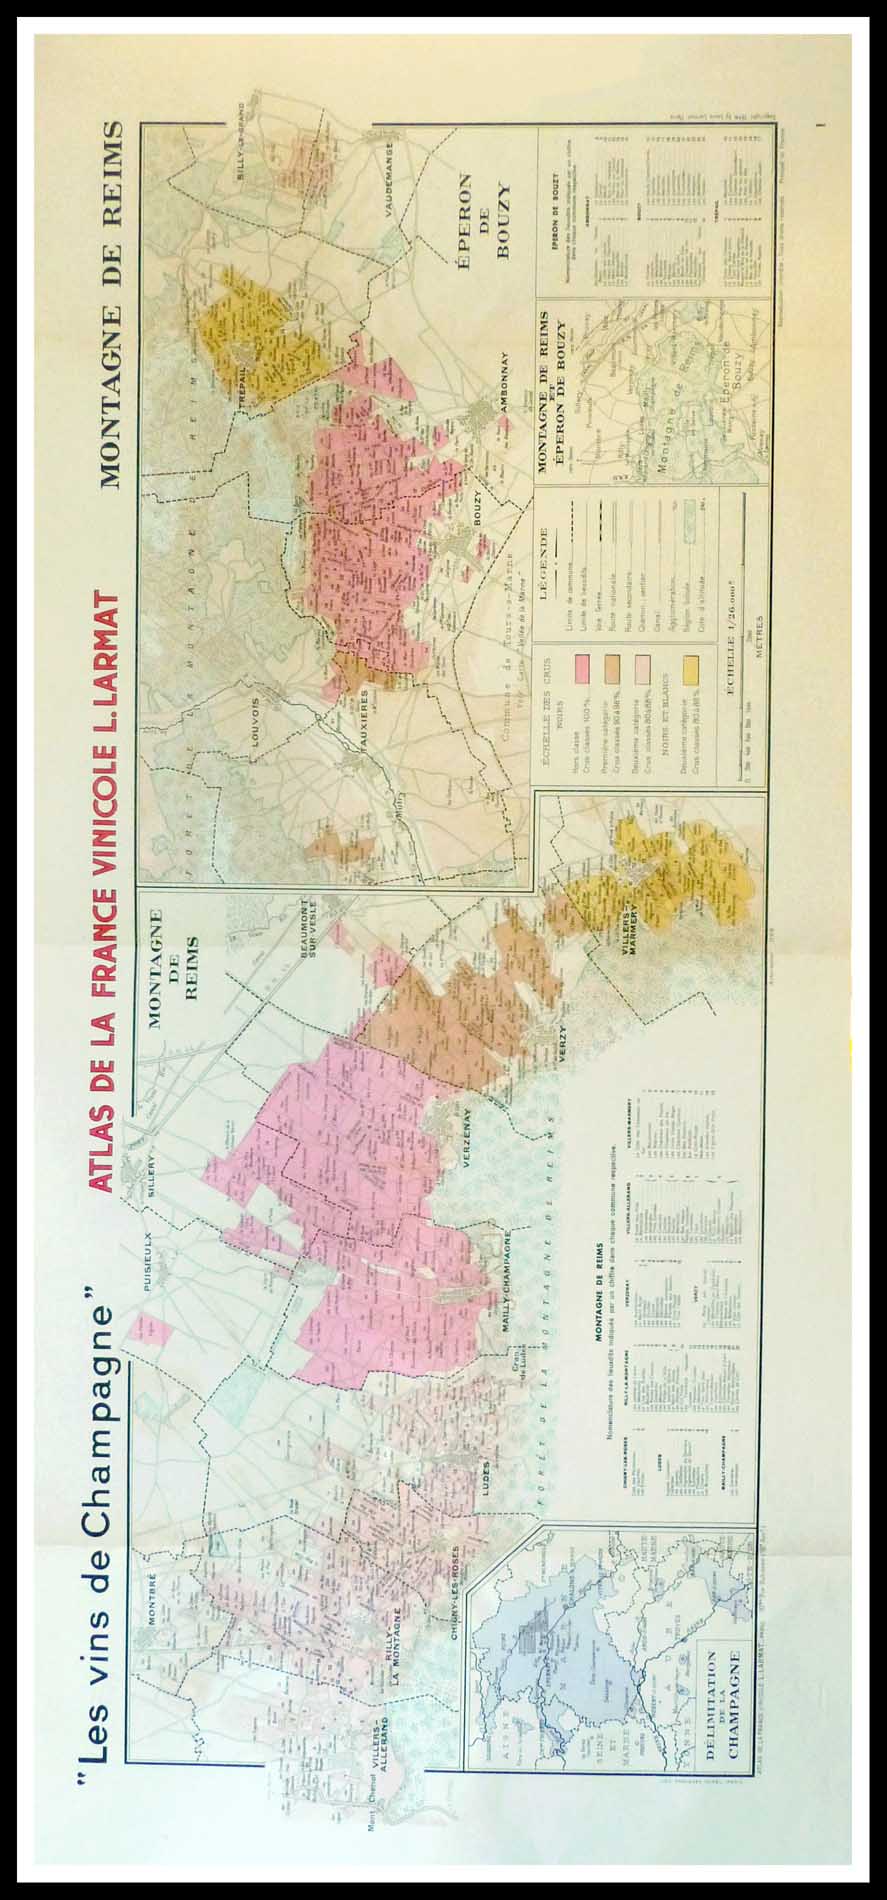 (alt="Original vintage French wine maps Les Vins de Champagne Montagne de Reims, Eperon de bouzy, Atals de la France vinicole Louis LARMAT 1942")